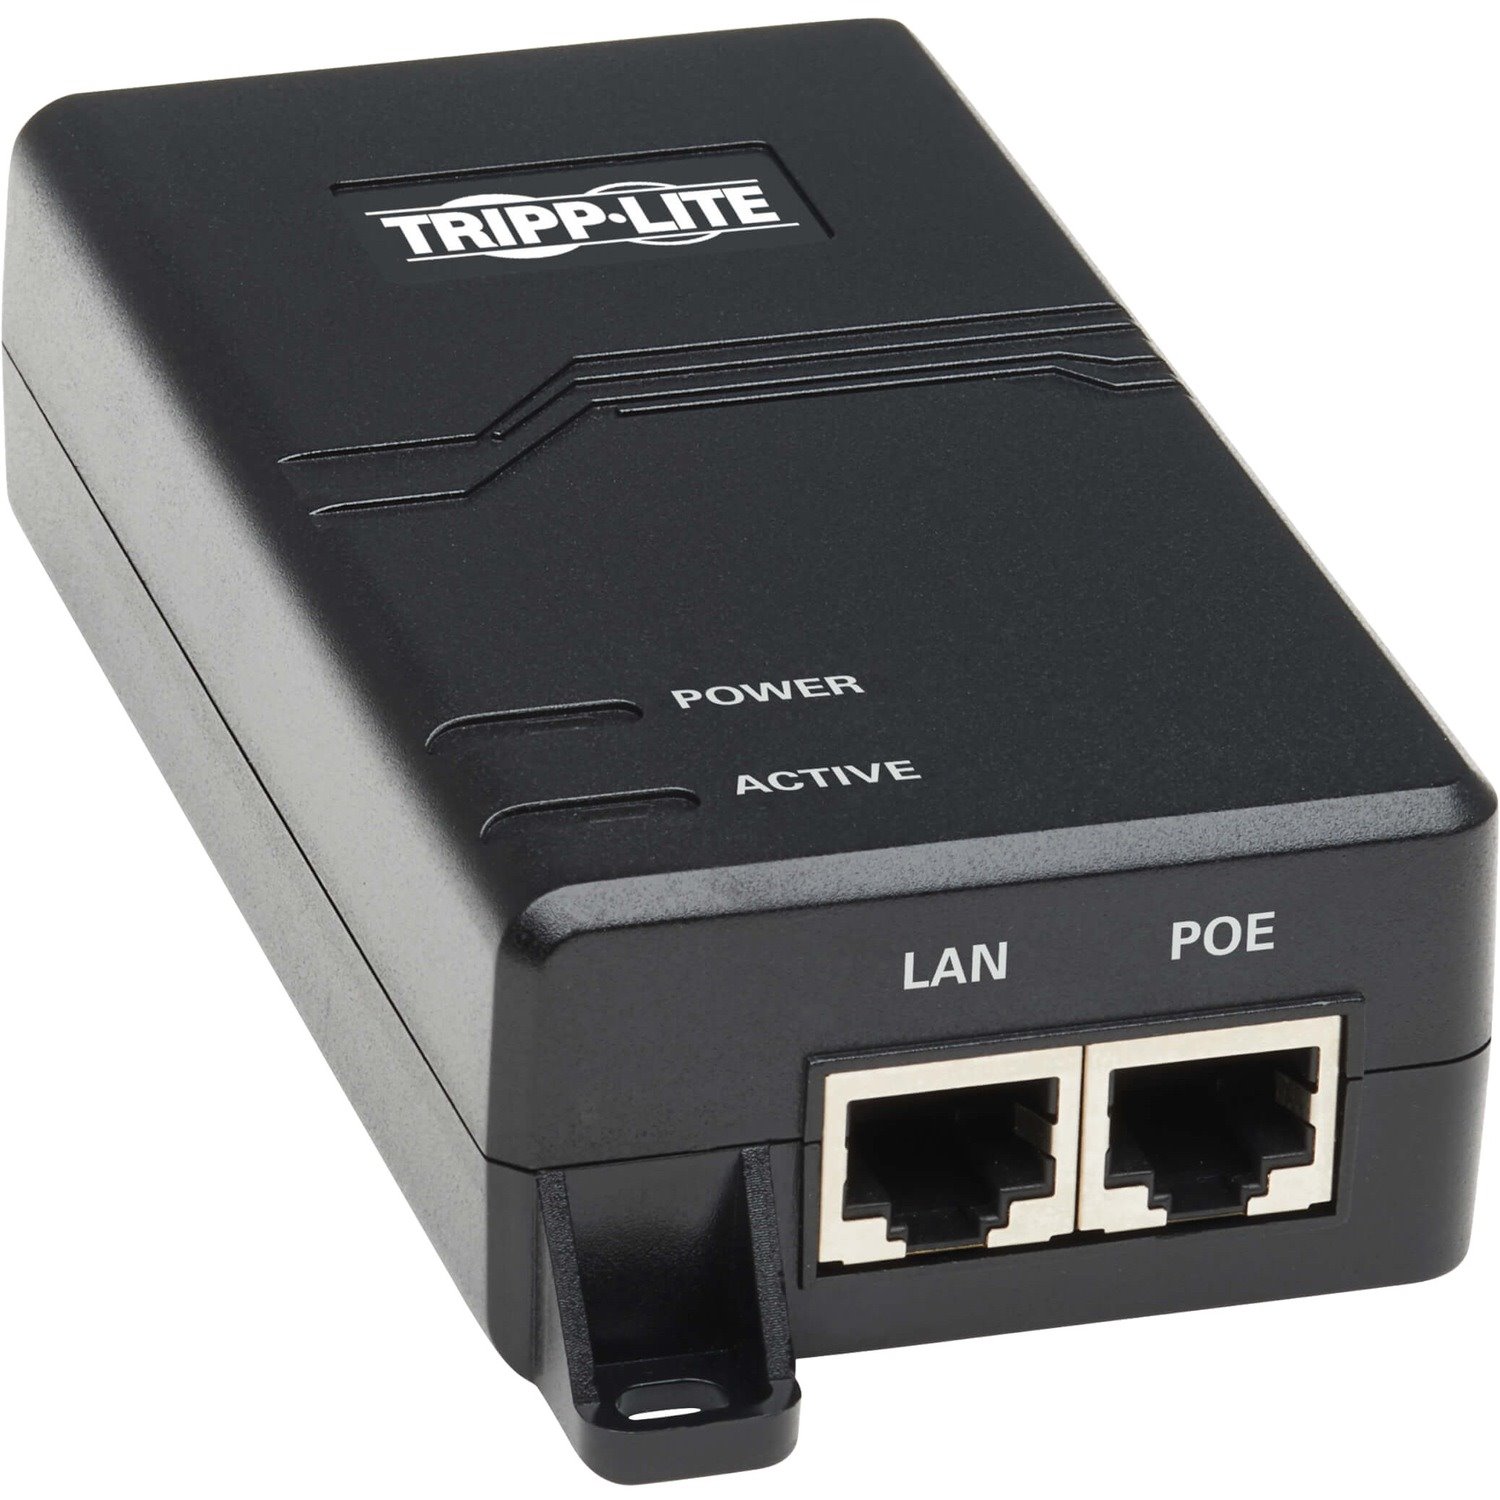 Tripp Lite Gigabit PoE+ Midspan Active Injector - IEEE 802.3at/802.3af, 30W, 1 Port, International Plug Adapters